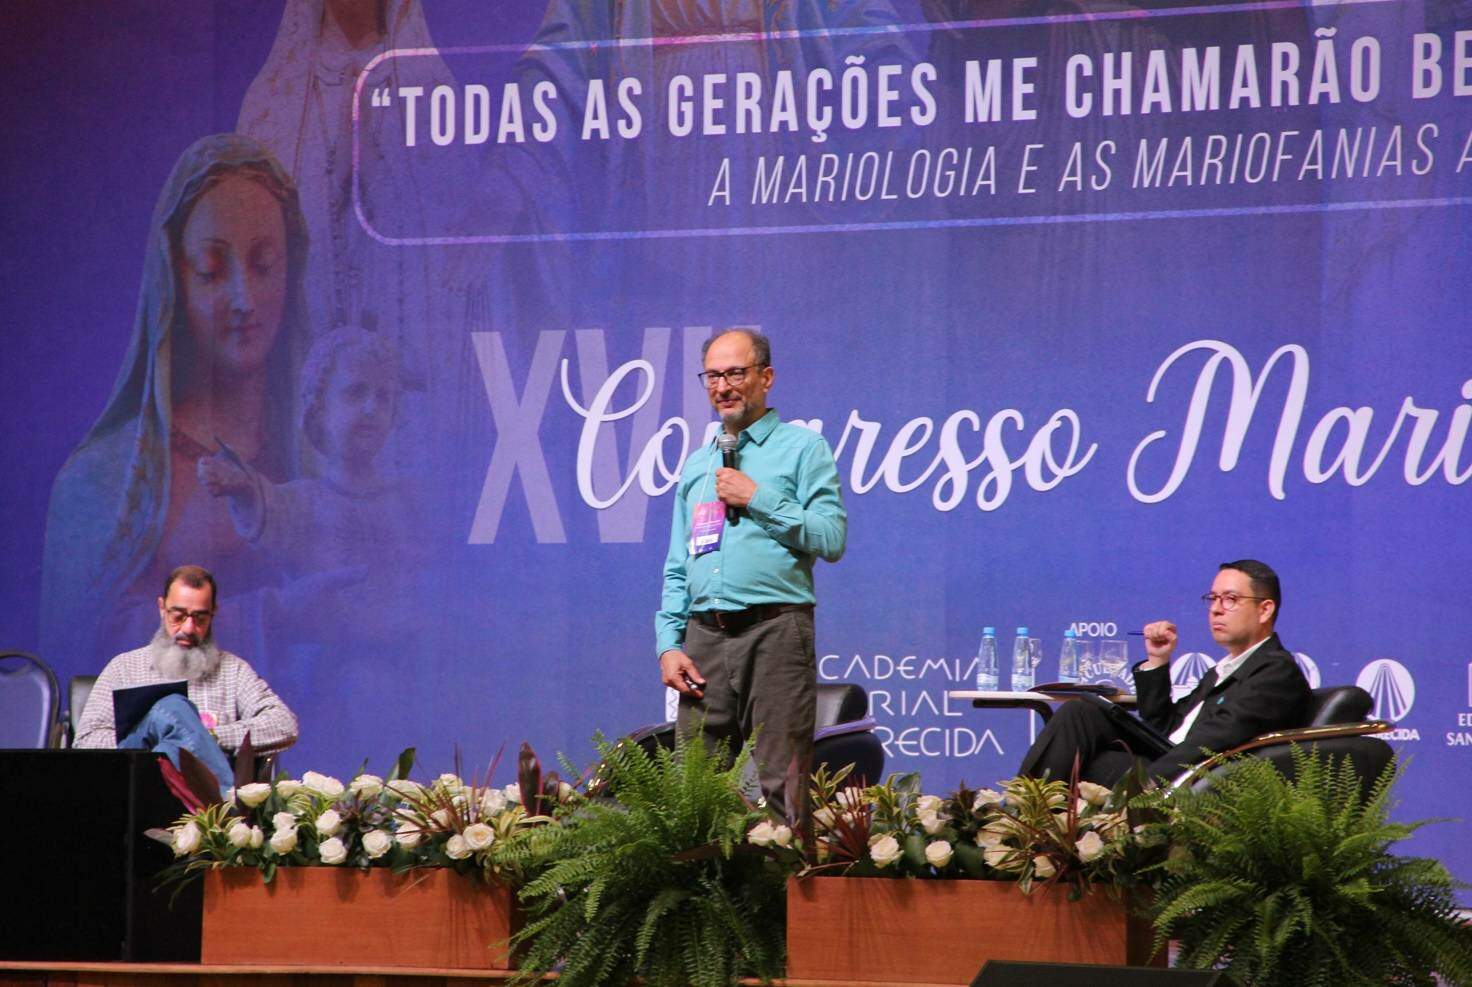 XVII Congresso Mariológico fala sobre o estudo das “Mariofanias”